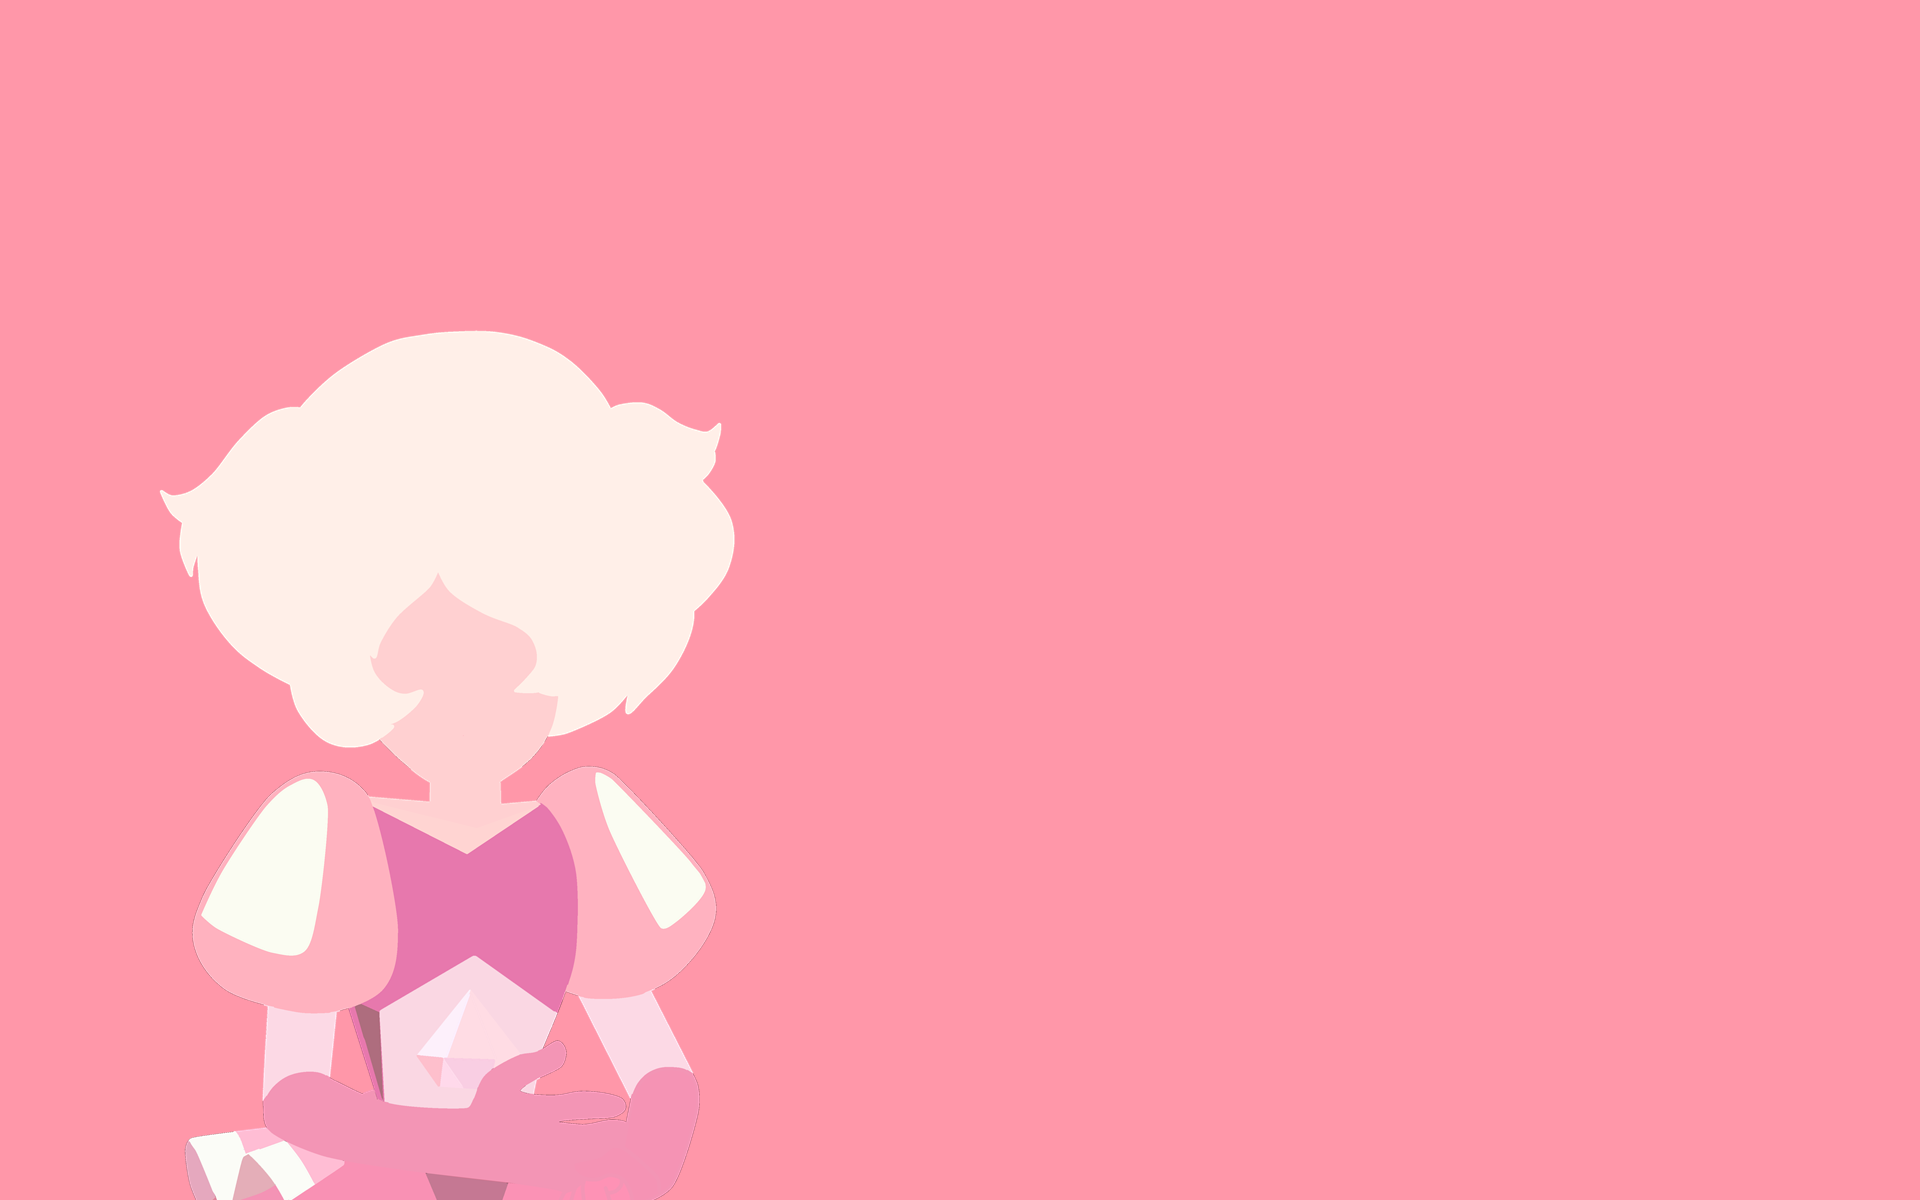 Hình nền Pink Diamond đơn giản Steven Universe: Hình nền Pink Diamond đơn giản Steven Universe có thiết kế đẹp mắt và sang trọng, không quá phức tạp. Sử dụng hình nền này để thể hiện sự thanh lịch và độc đáo của bạn và làm cho màn hình của bạn trở nên thật sự nổi bật.